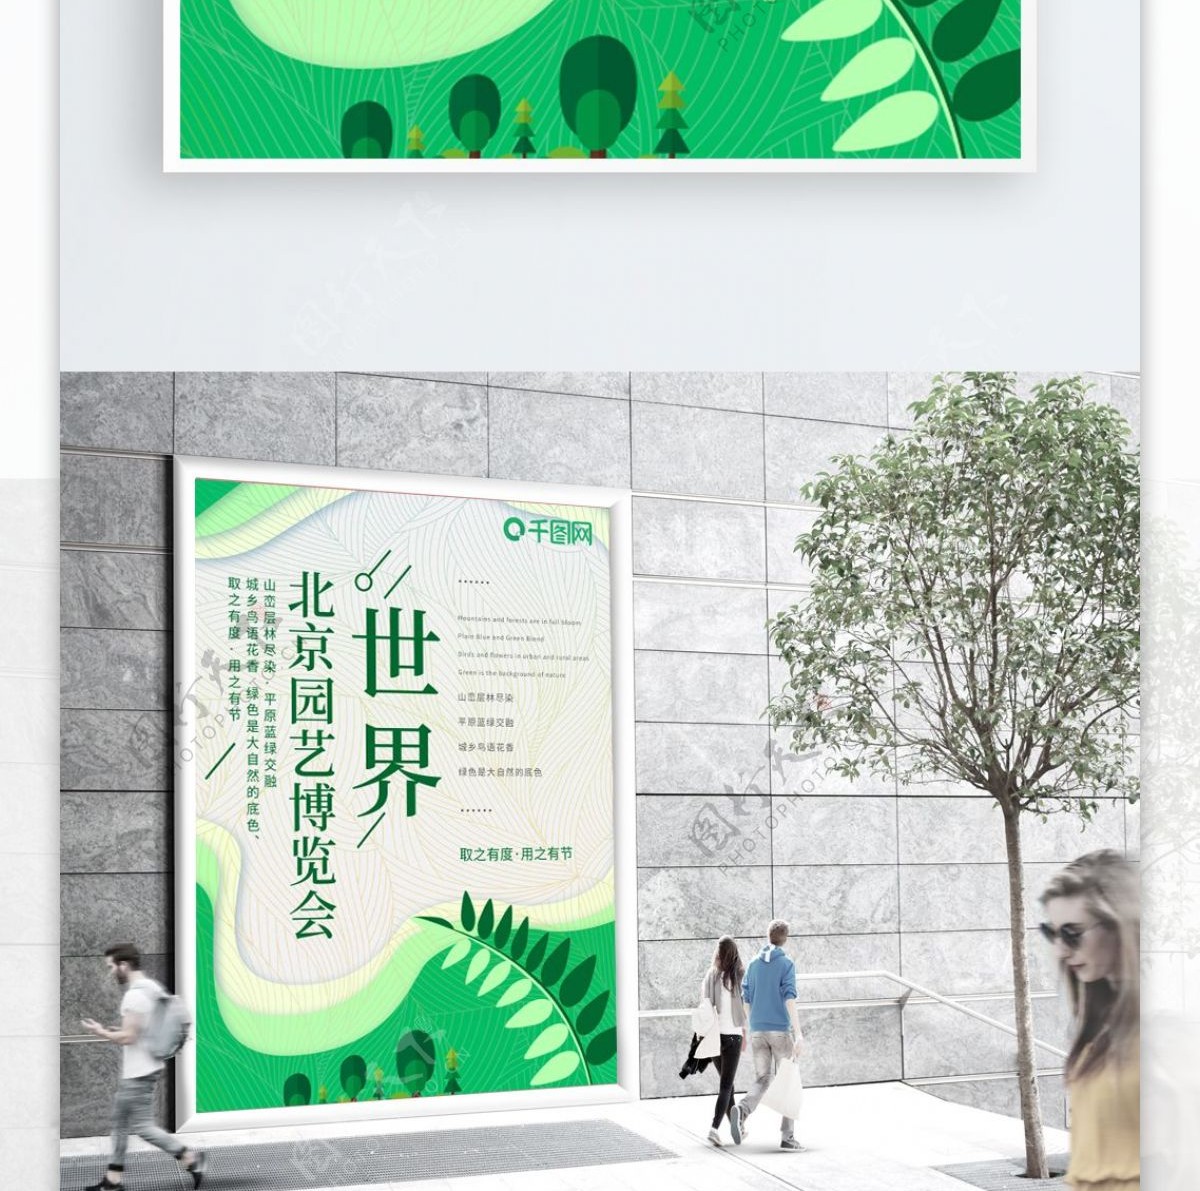 北京世界园艺博览会海报小清新创意简约海报